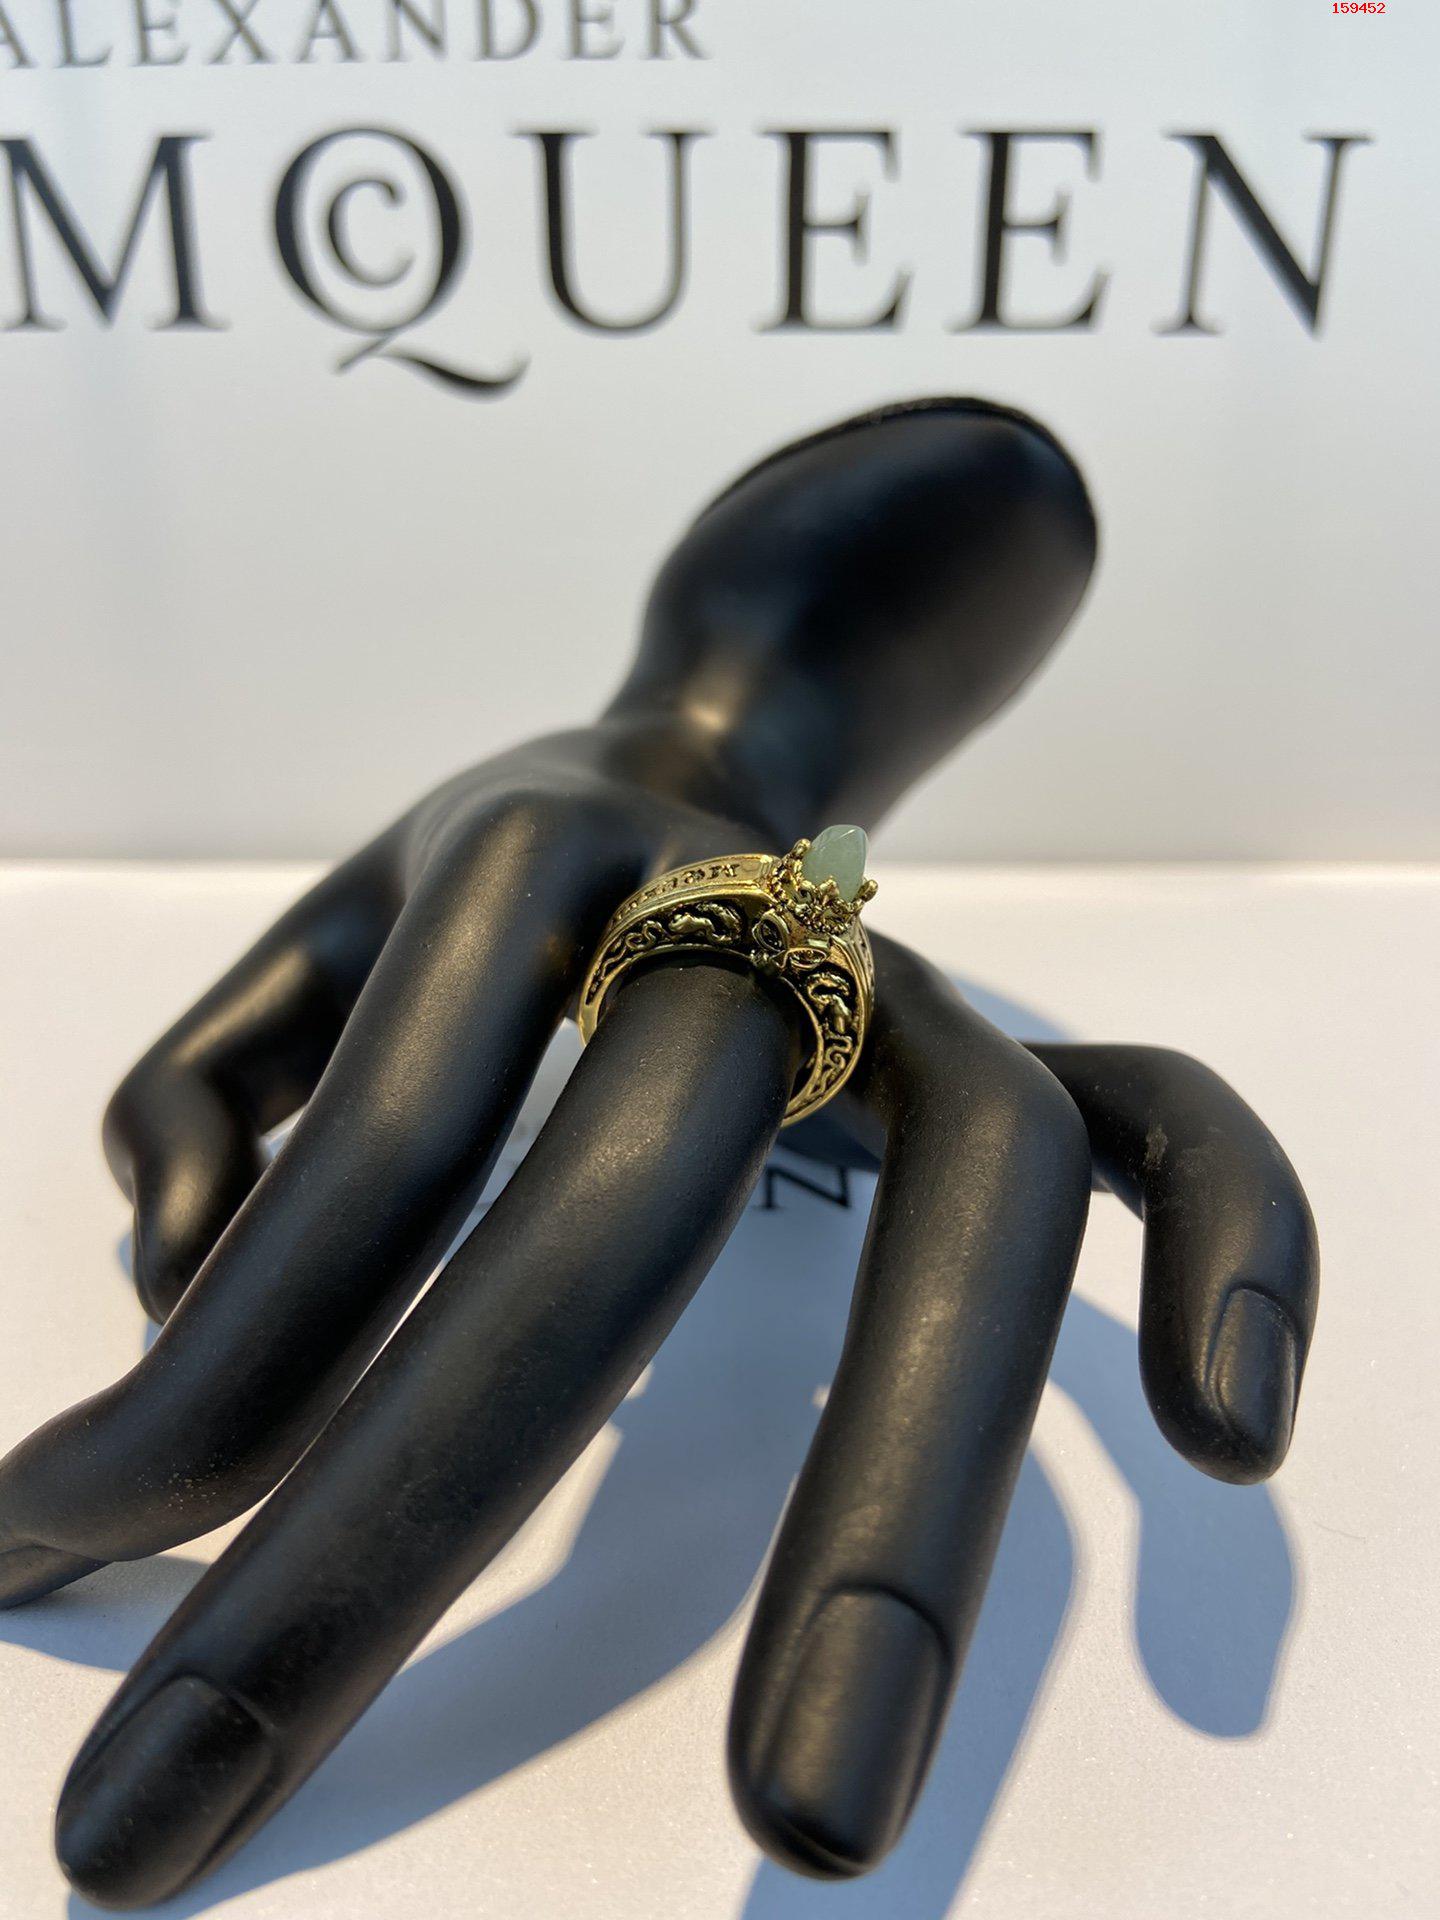 AlexanderMcQueen原版定 高仿名牌戒指 精仿名牌戒指 原版名牌戒指 A货名牌戒指 原单名牌戒指 